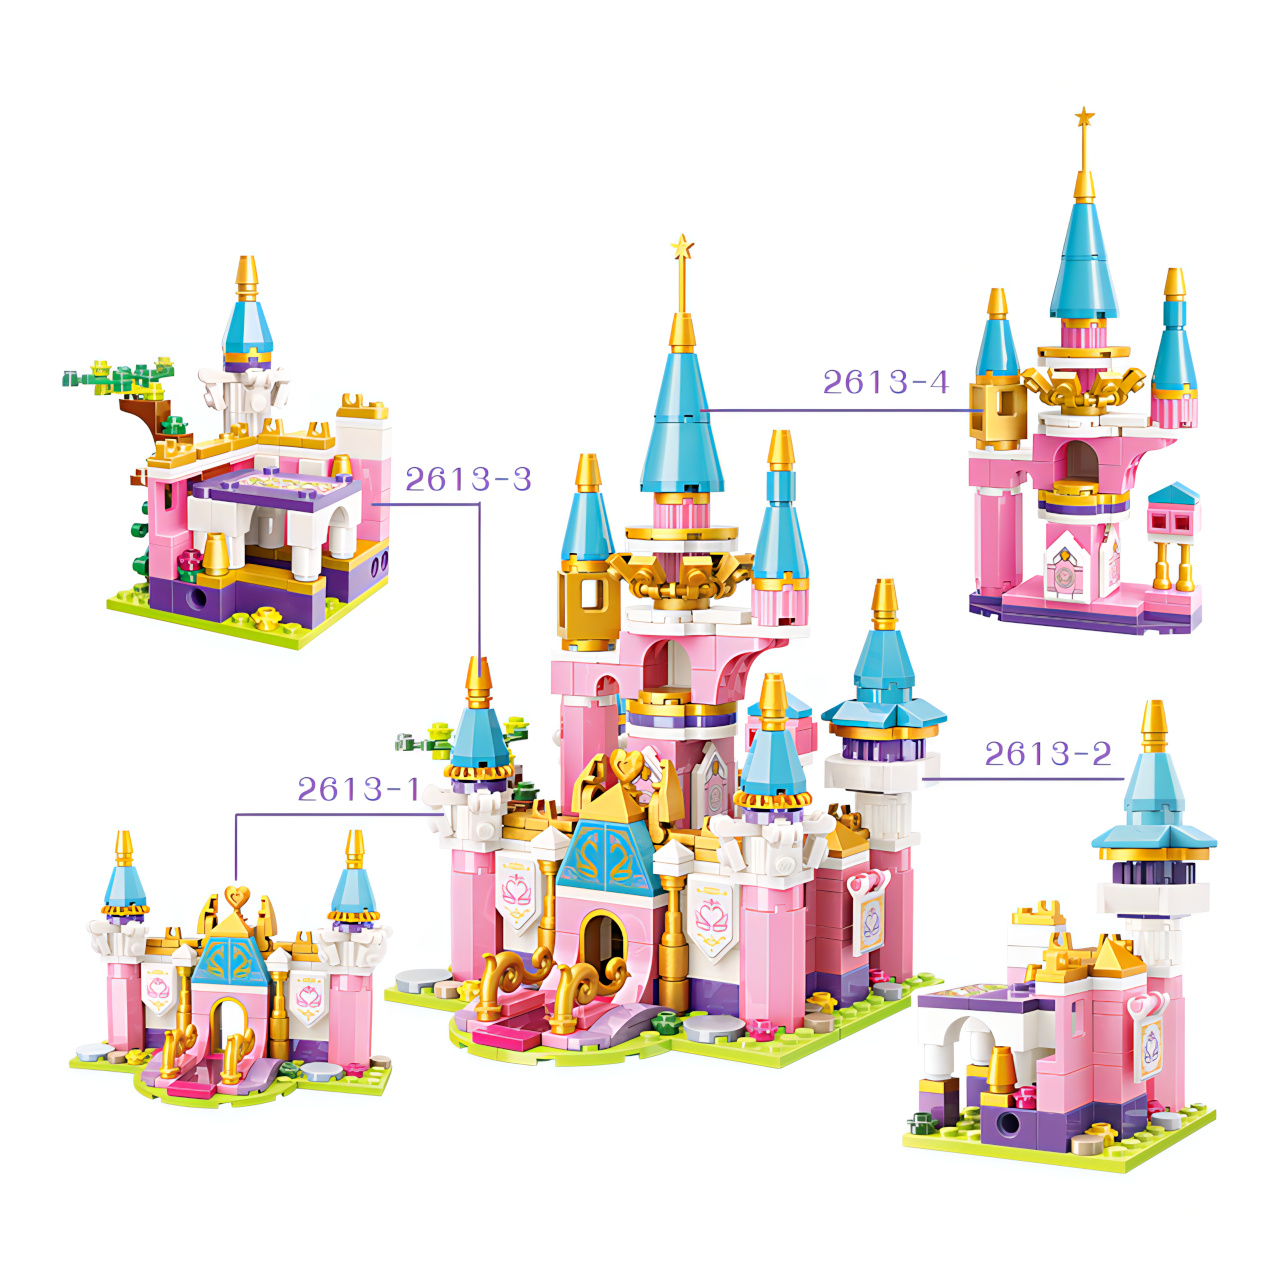 Набор конструкторов Qman «Замок Принцессы» 2613 Princess Leah 468 деталей / 4 шт.